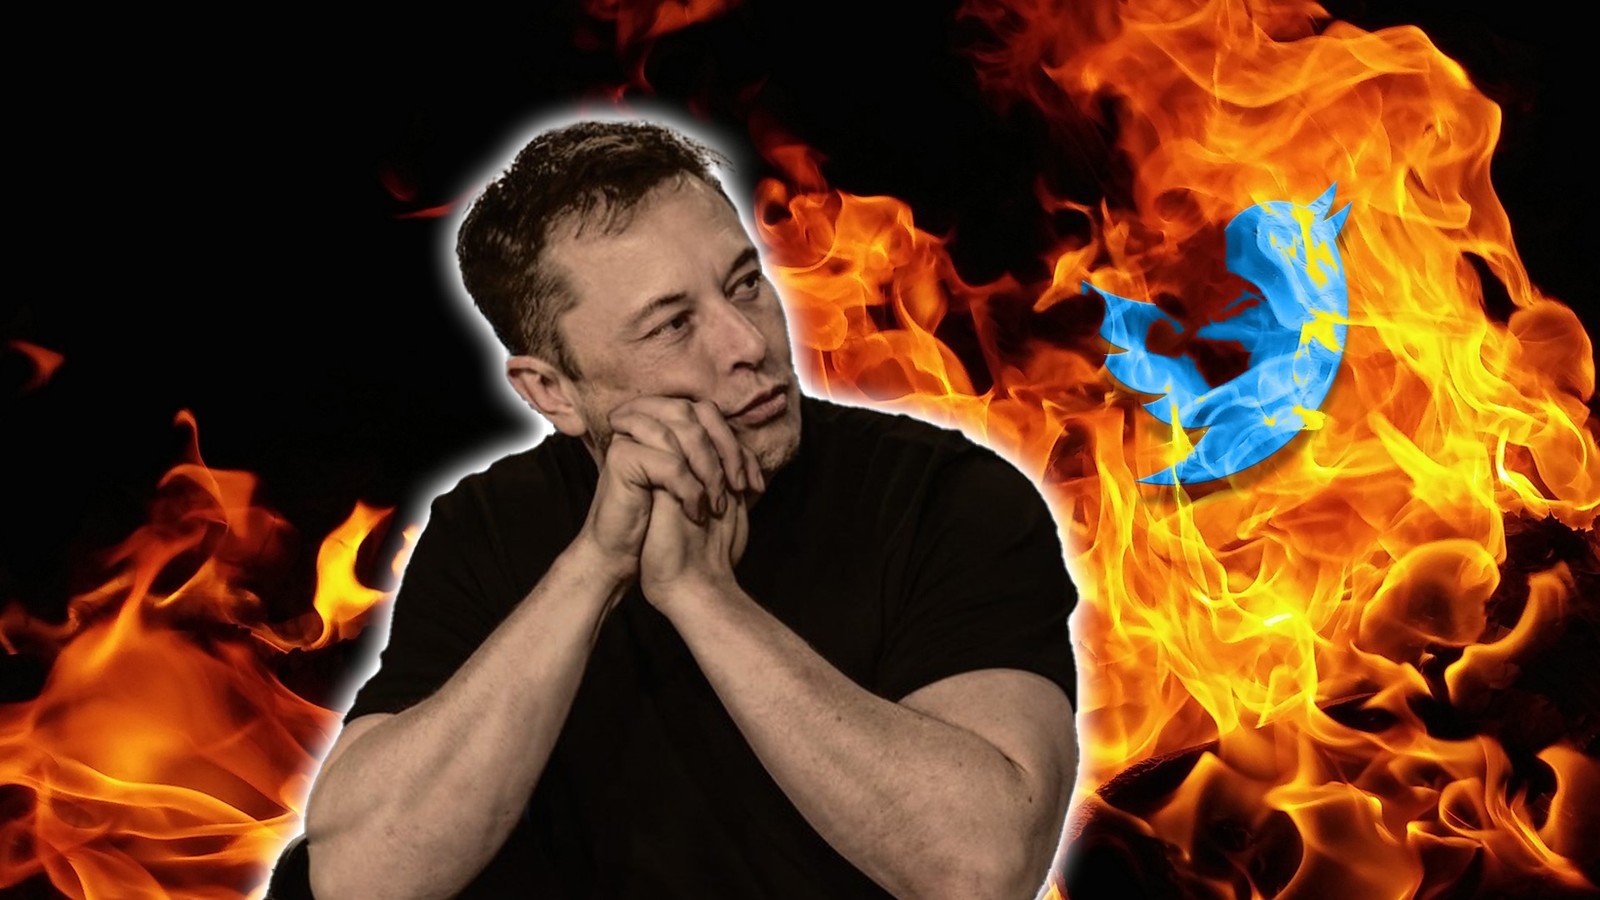 Bez obaw – Elon Musk wie, co robi. Twitter nie działa, a ja się zastanawiam, ile jesteśmy w stanie znieść dla wygody